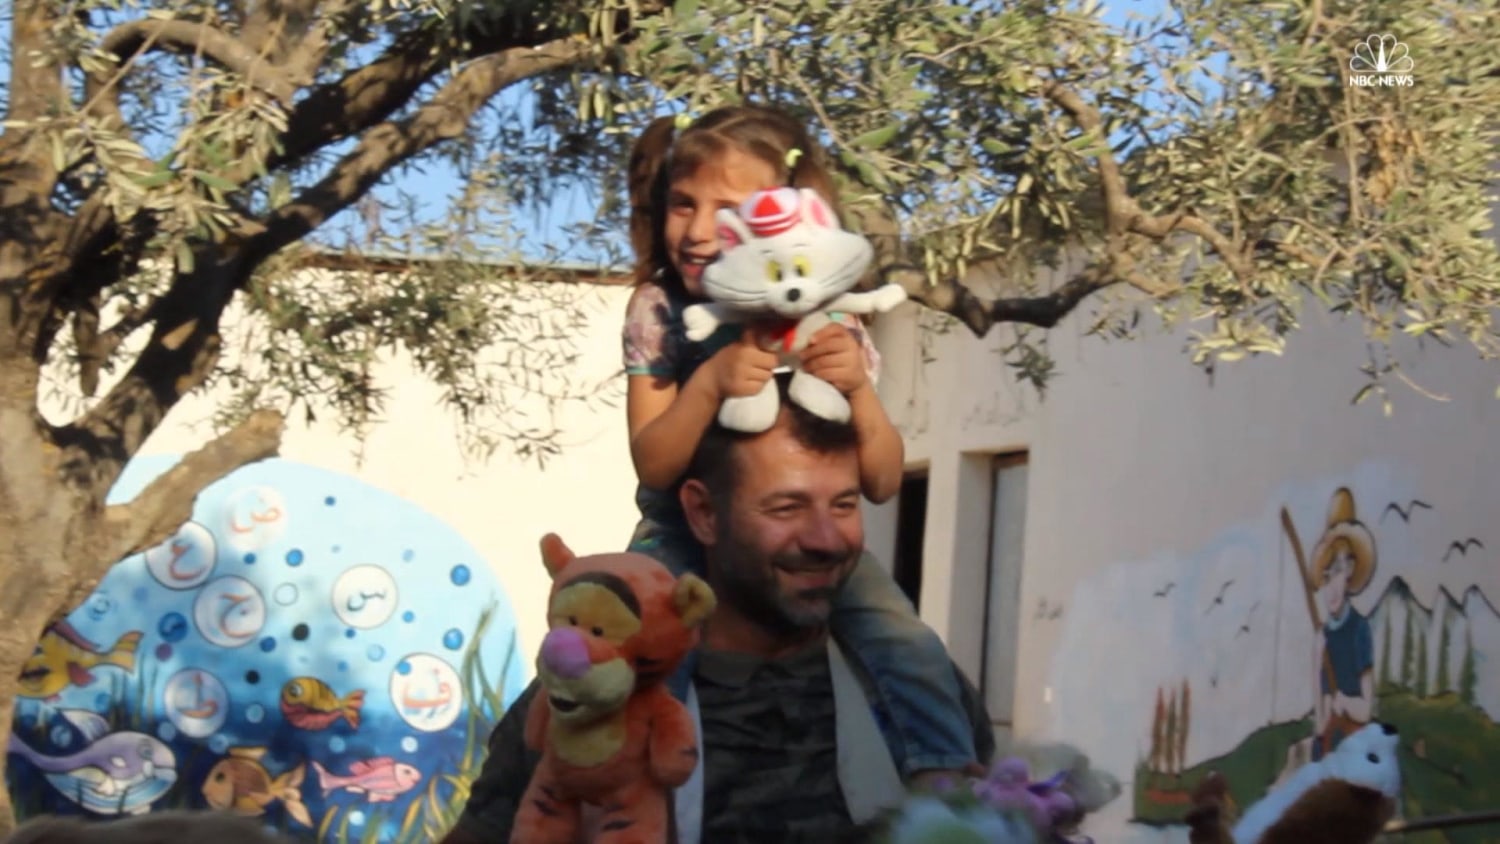 Toy Smuggler Rami Adham Brings Smiles